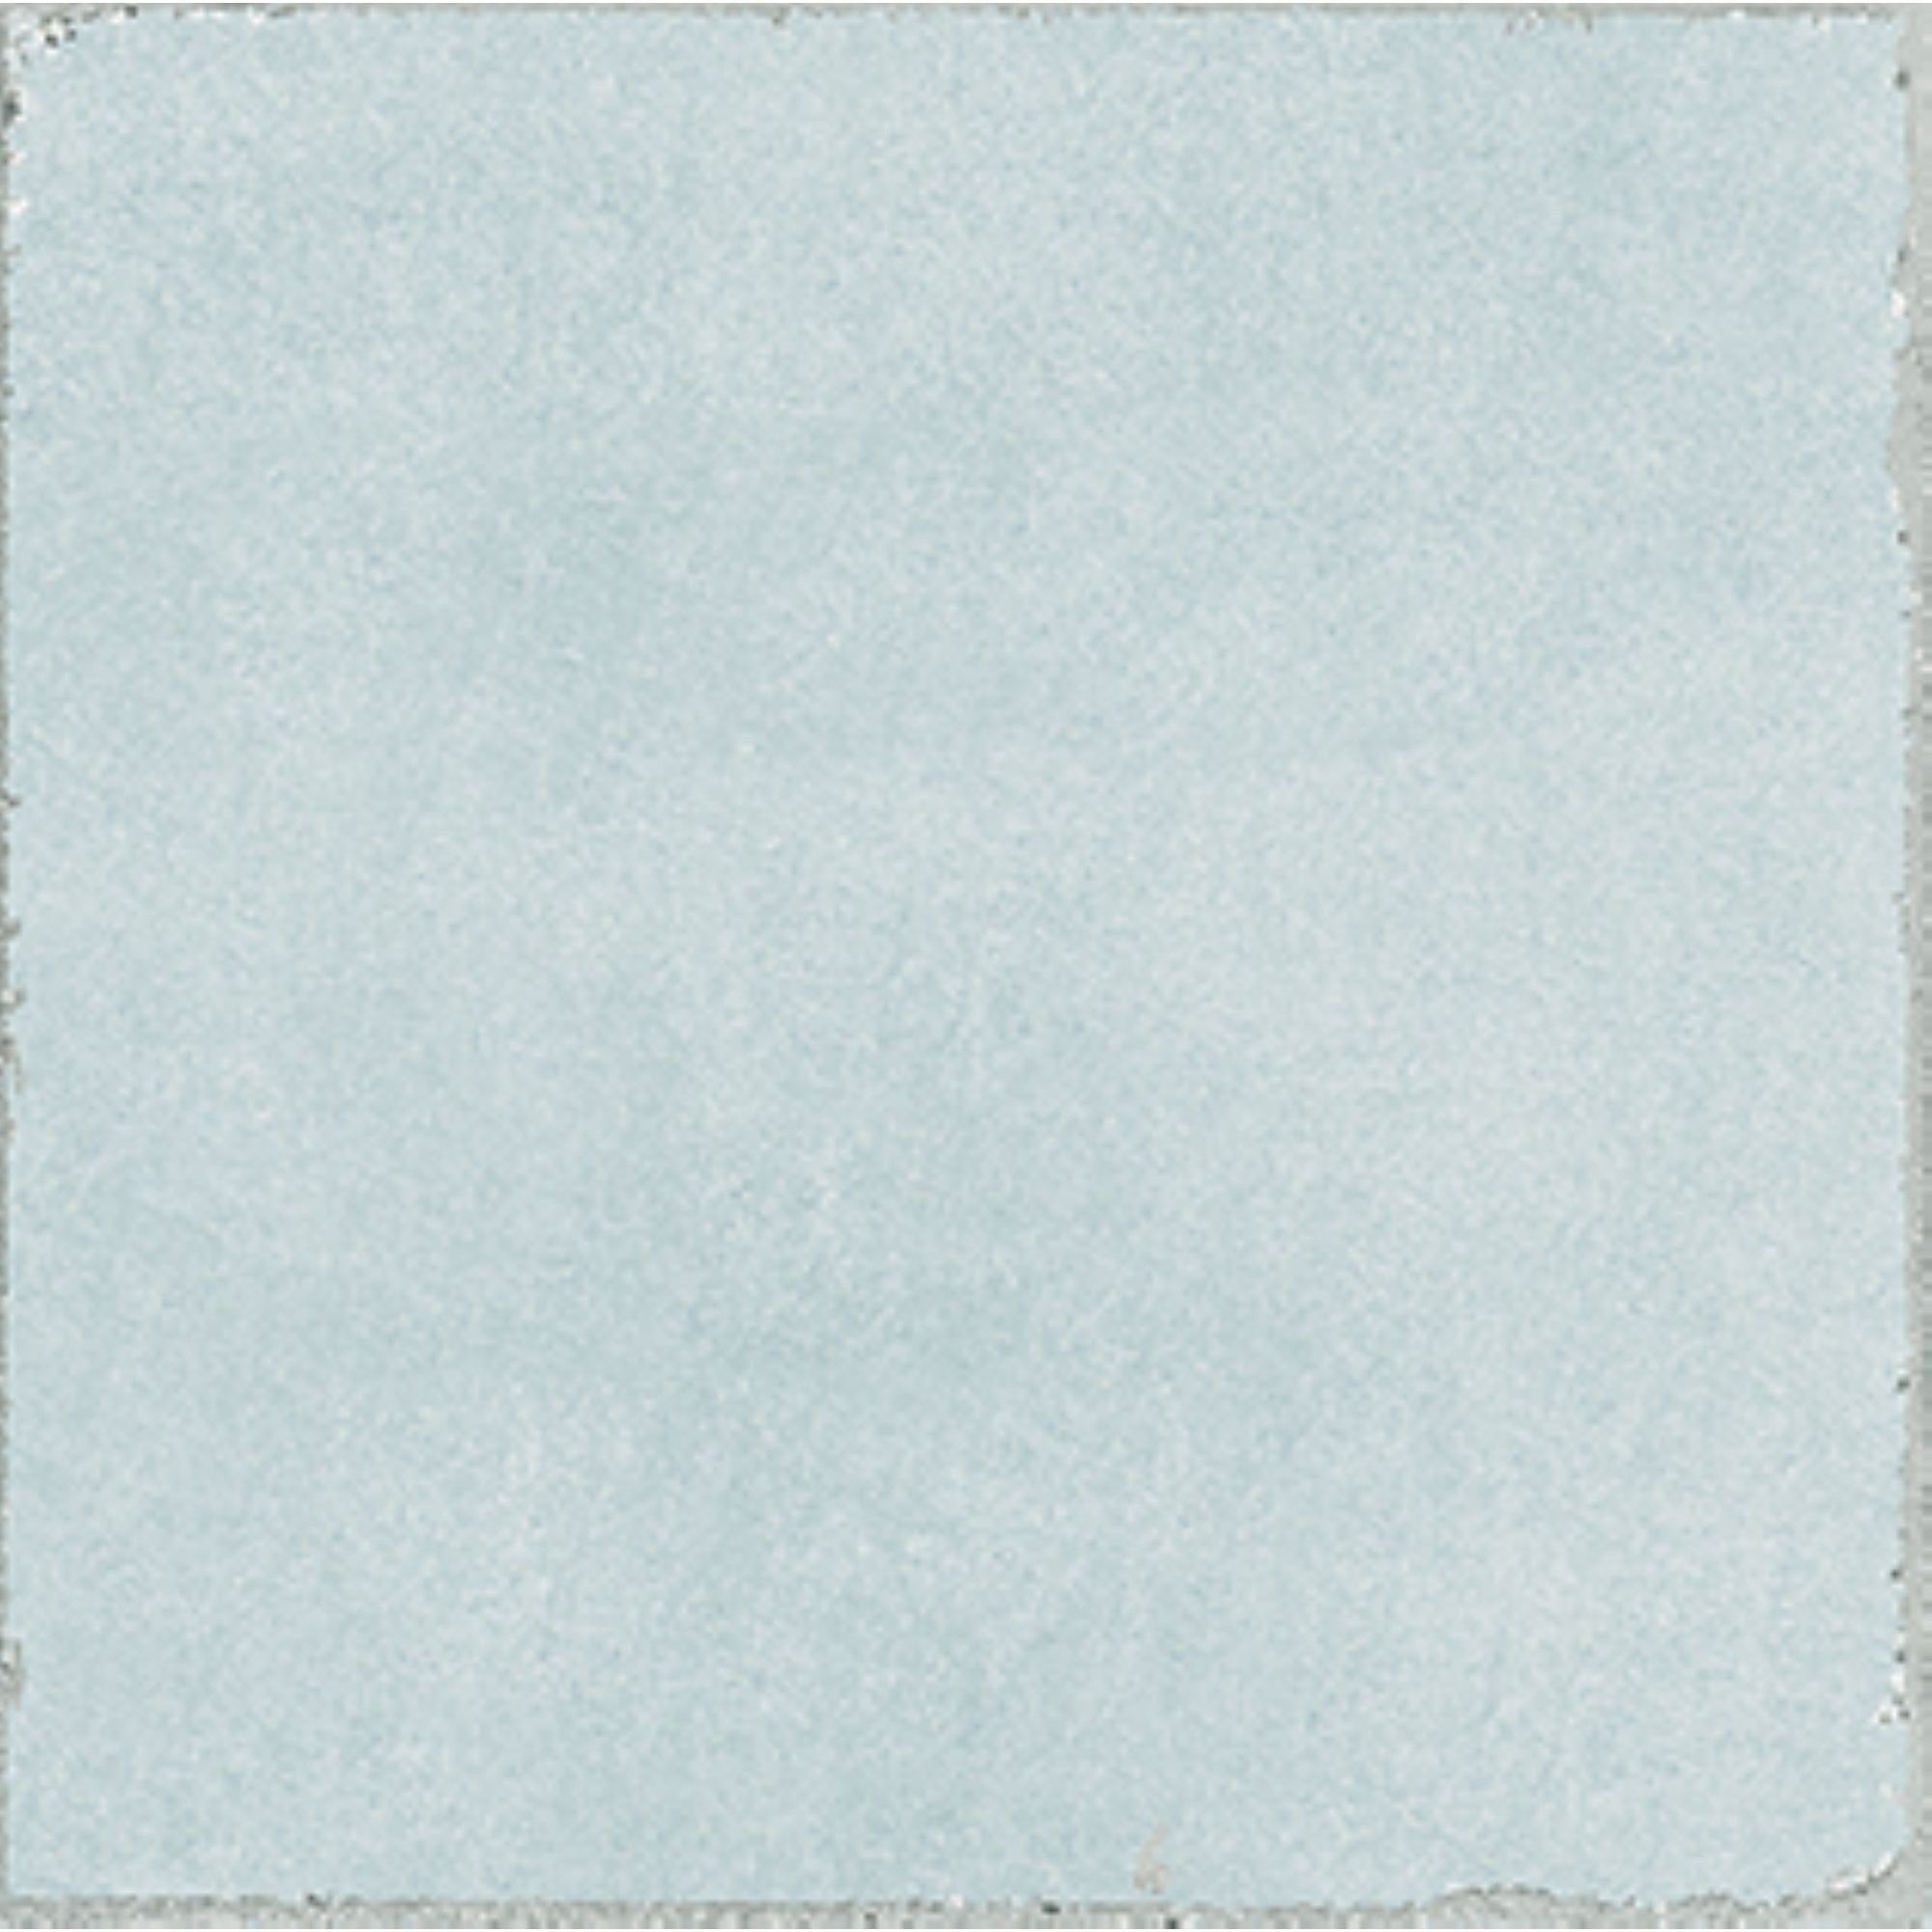 Bodenfliese 'Valencia' Feinsteinzeug hellblau matt 20 x 20 cm + product picture